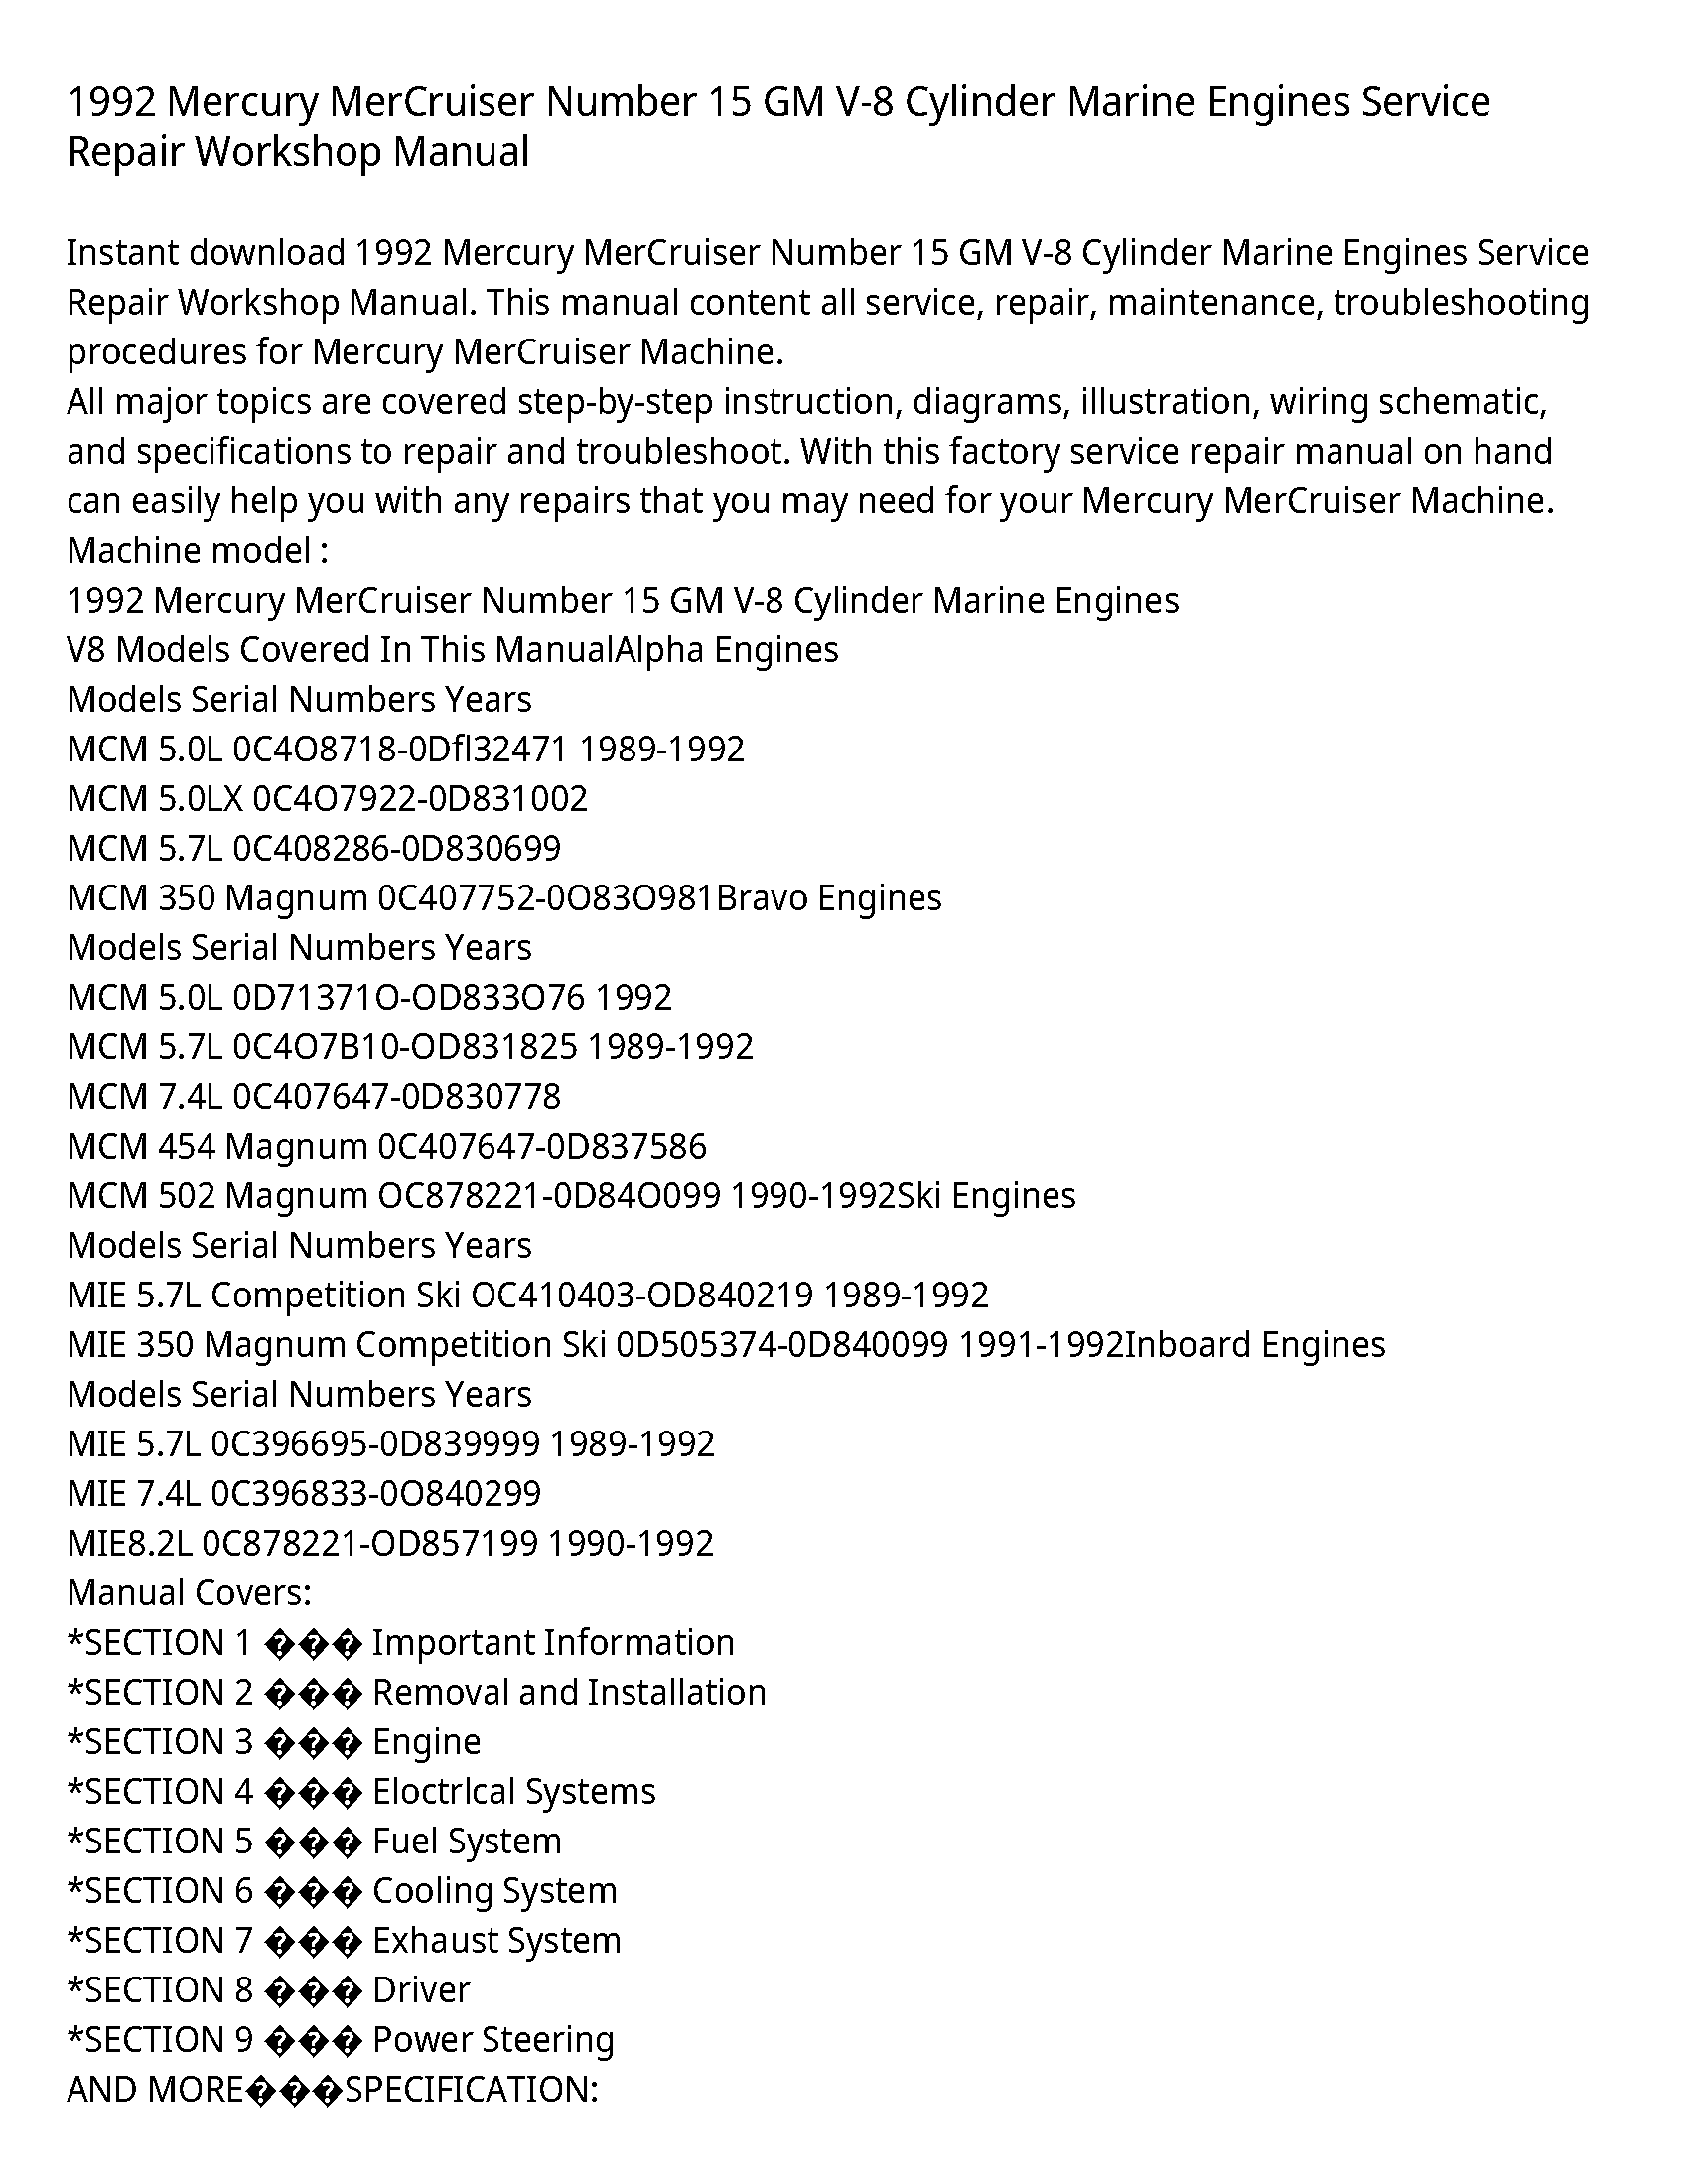 Mercury V-8 MerCruiser Number GM Cylinder Marine Engines manual